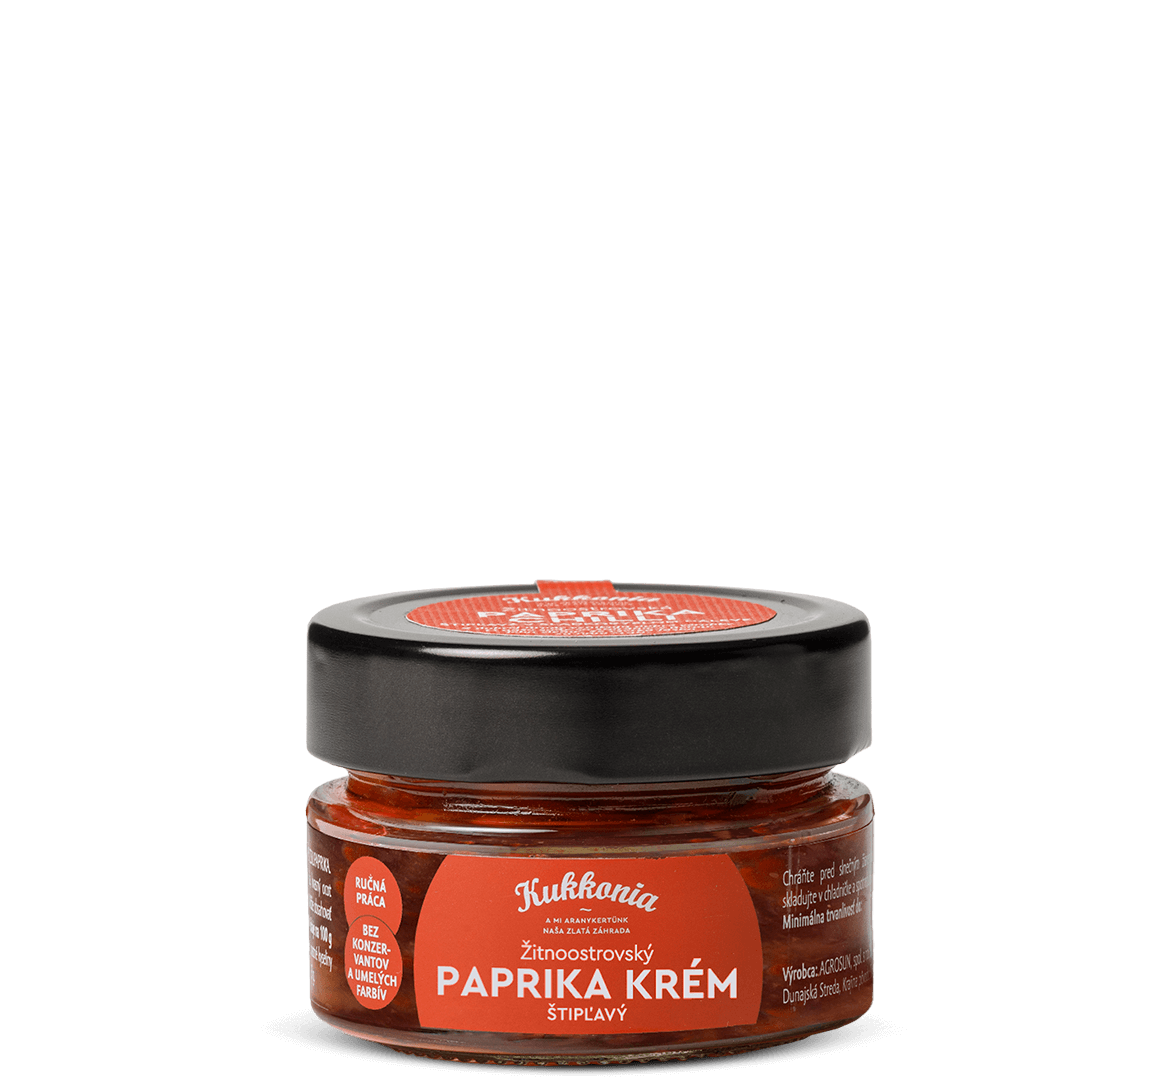 Paprika-Krém-Garden-Kukkonia-1167x1080px